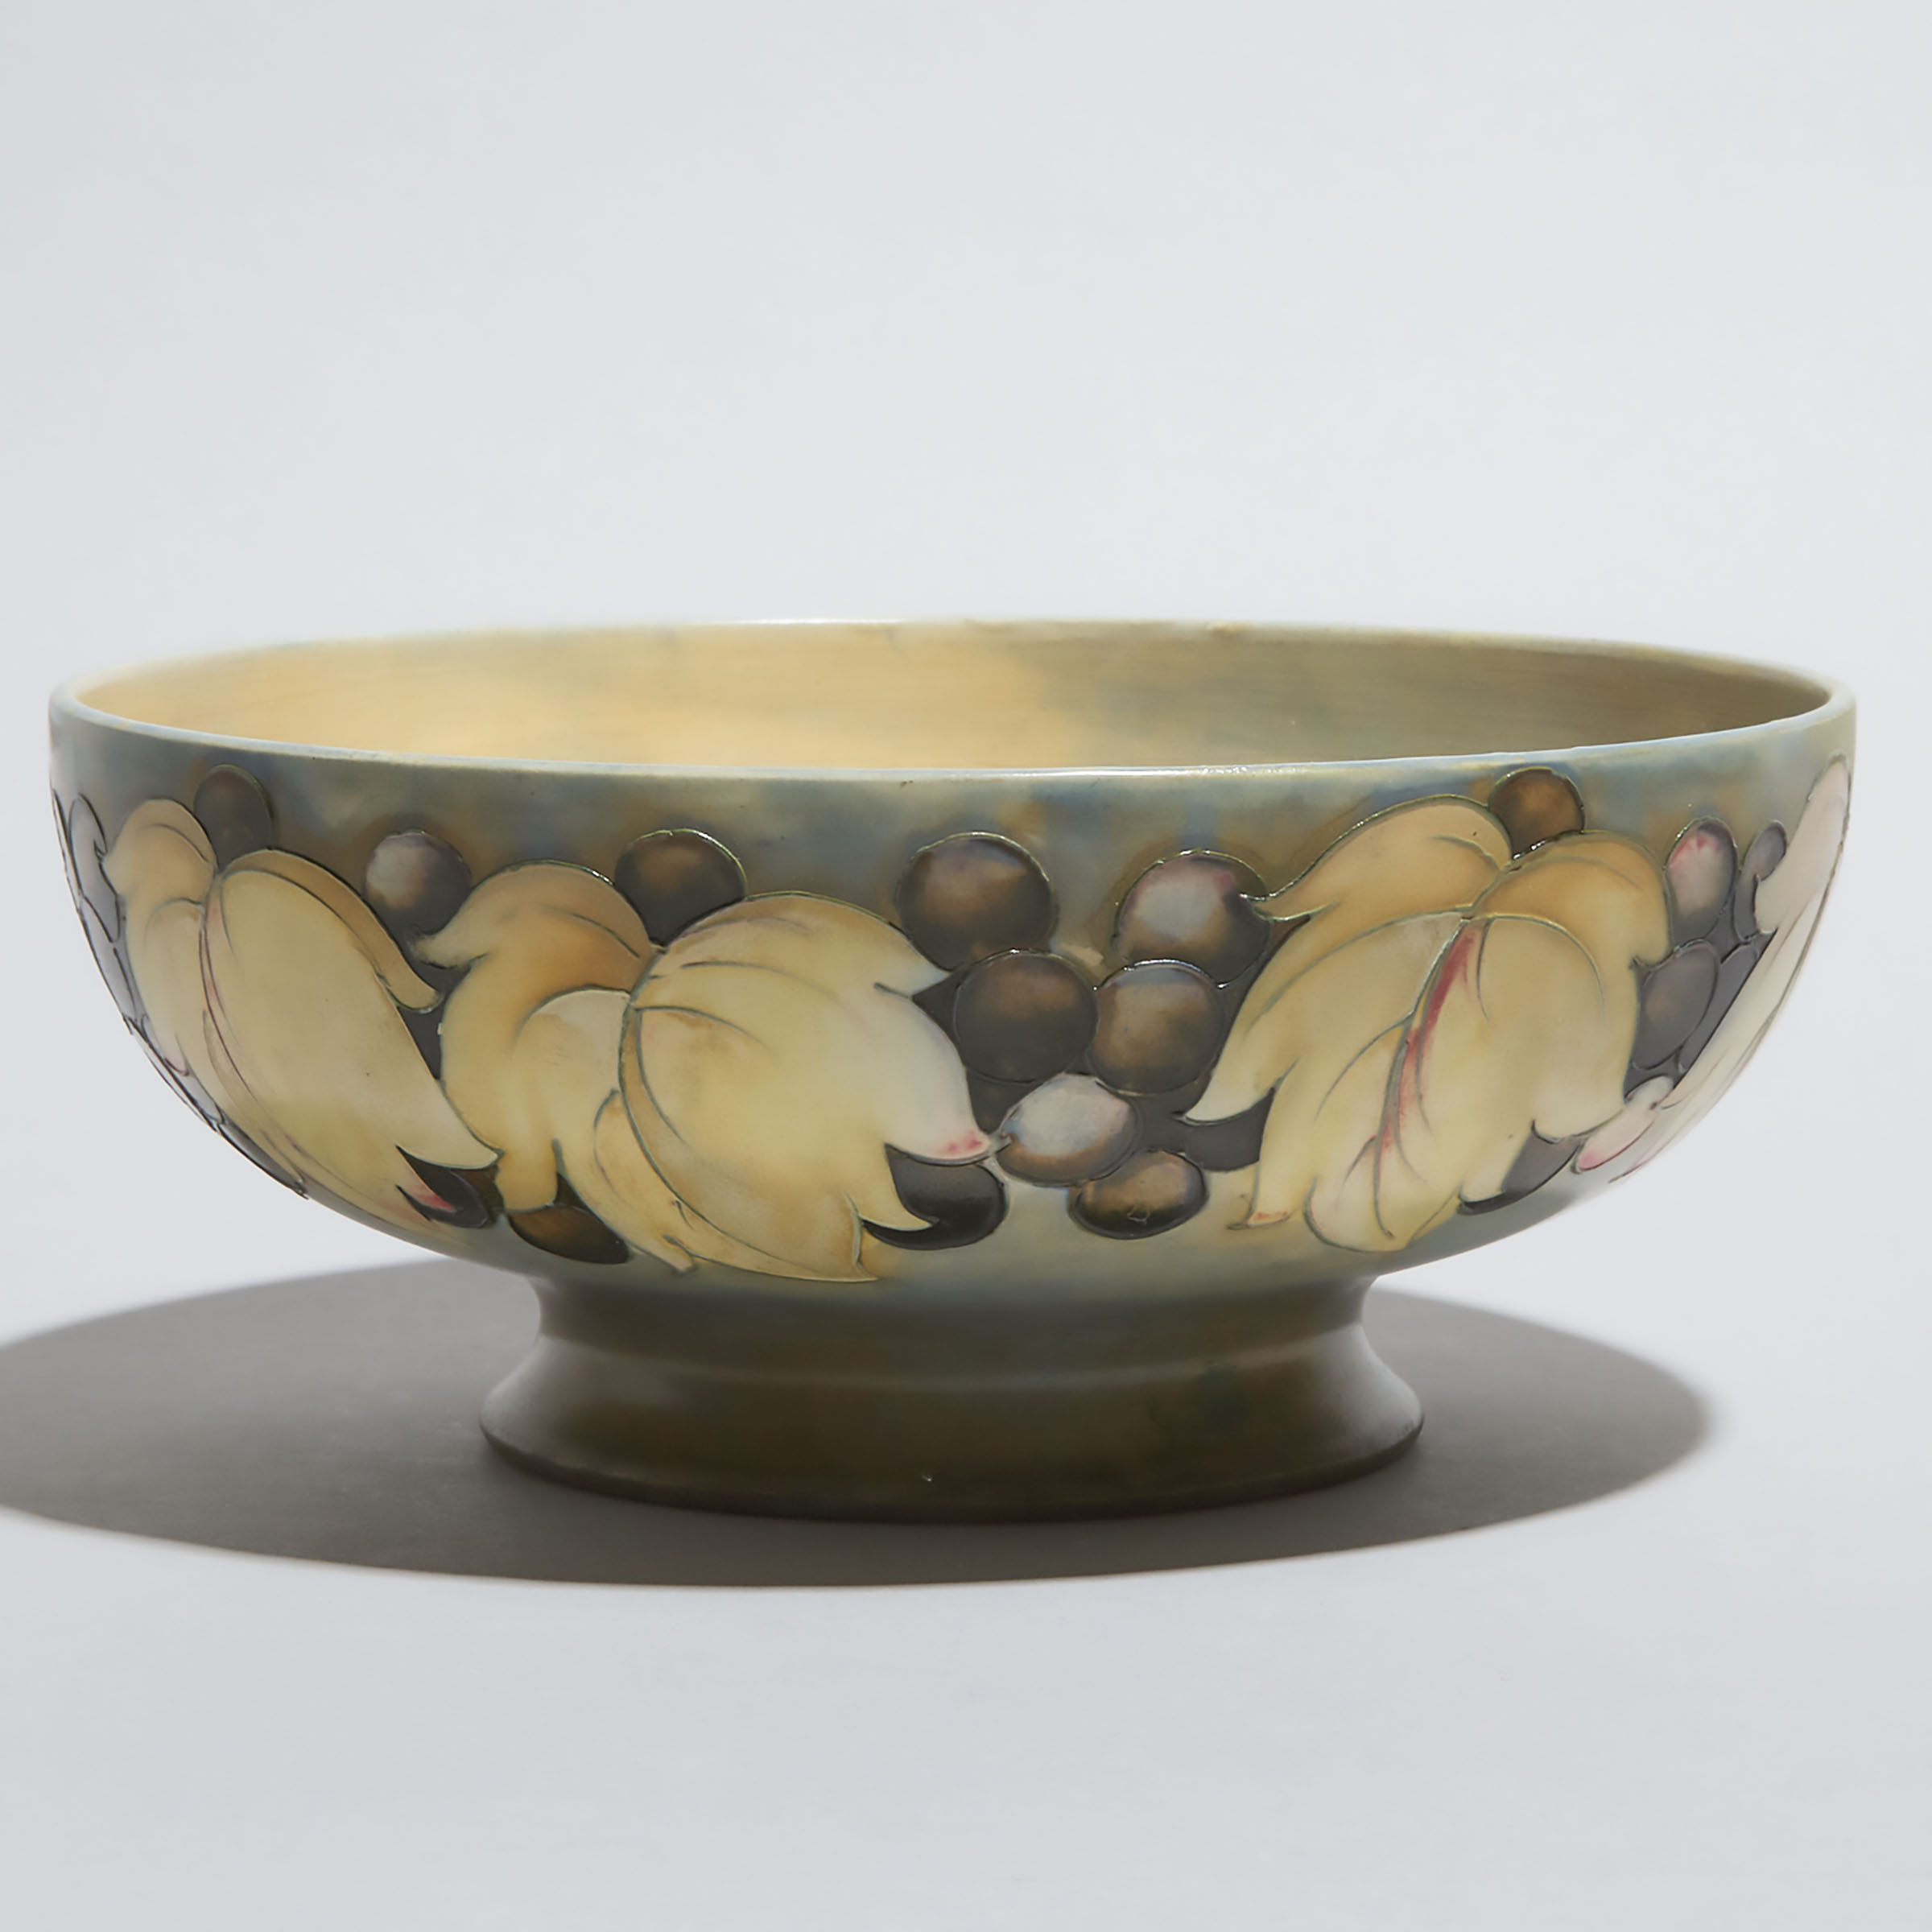 Moorcroft Grape and Leaf Bowl, c.1928-30